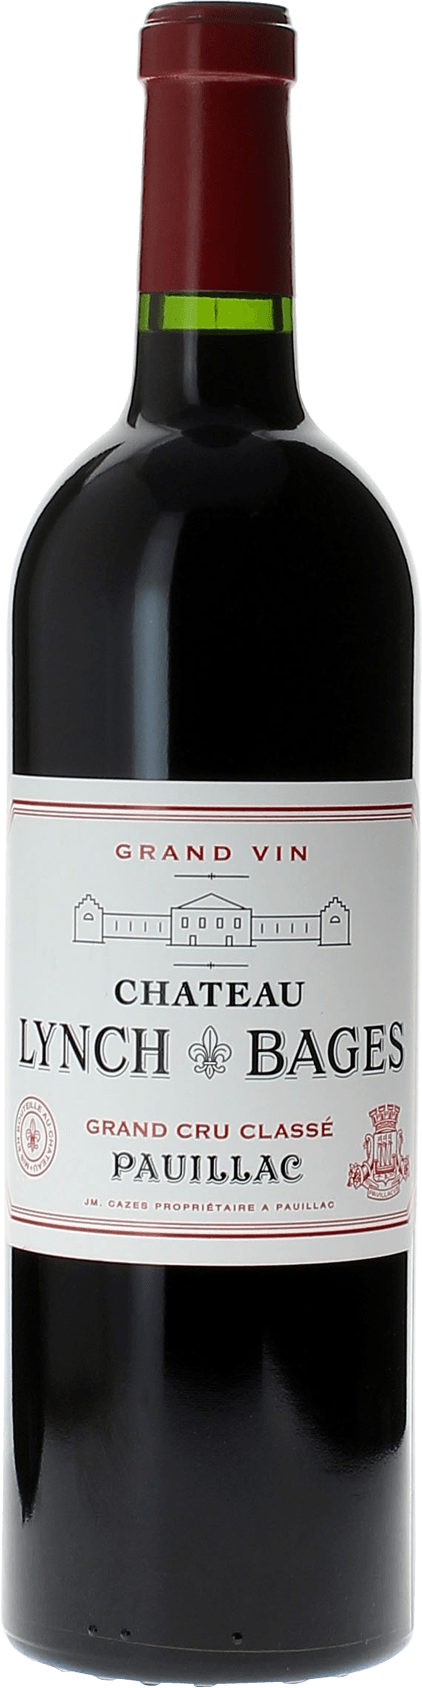 Lynch bages 1984 5 me Grand cru class Pauillac, Bordeaux rouge